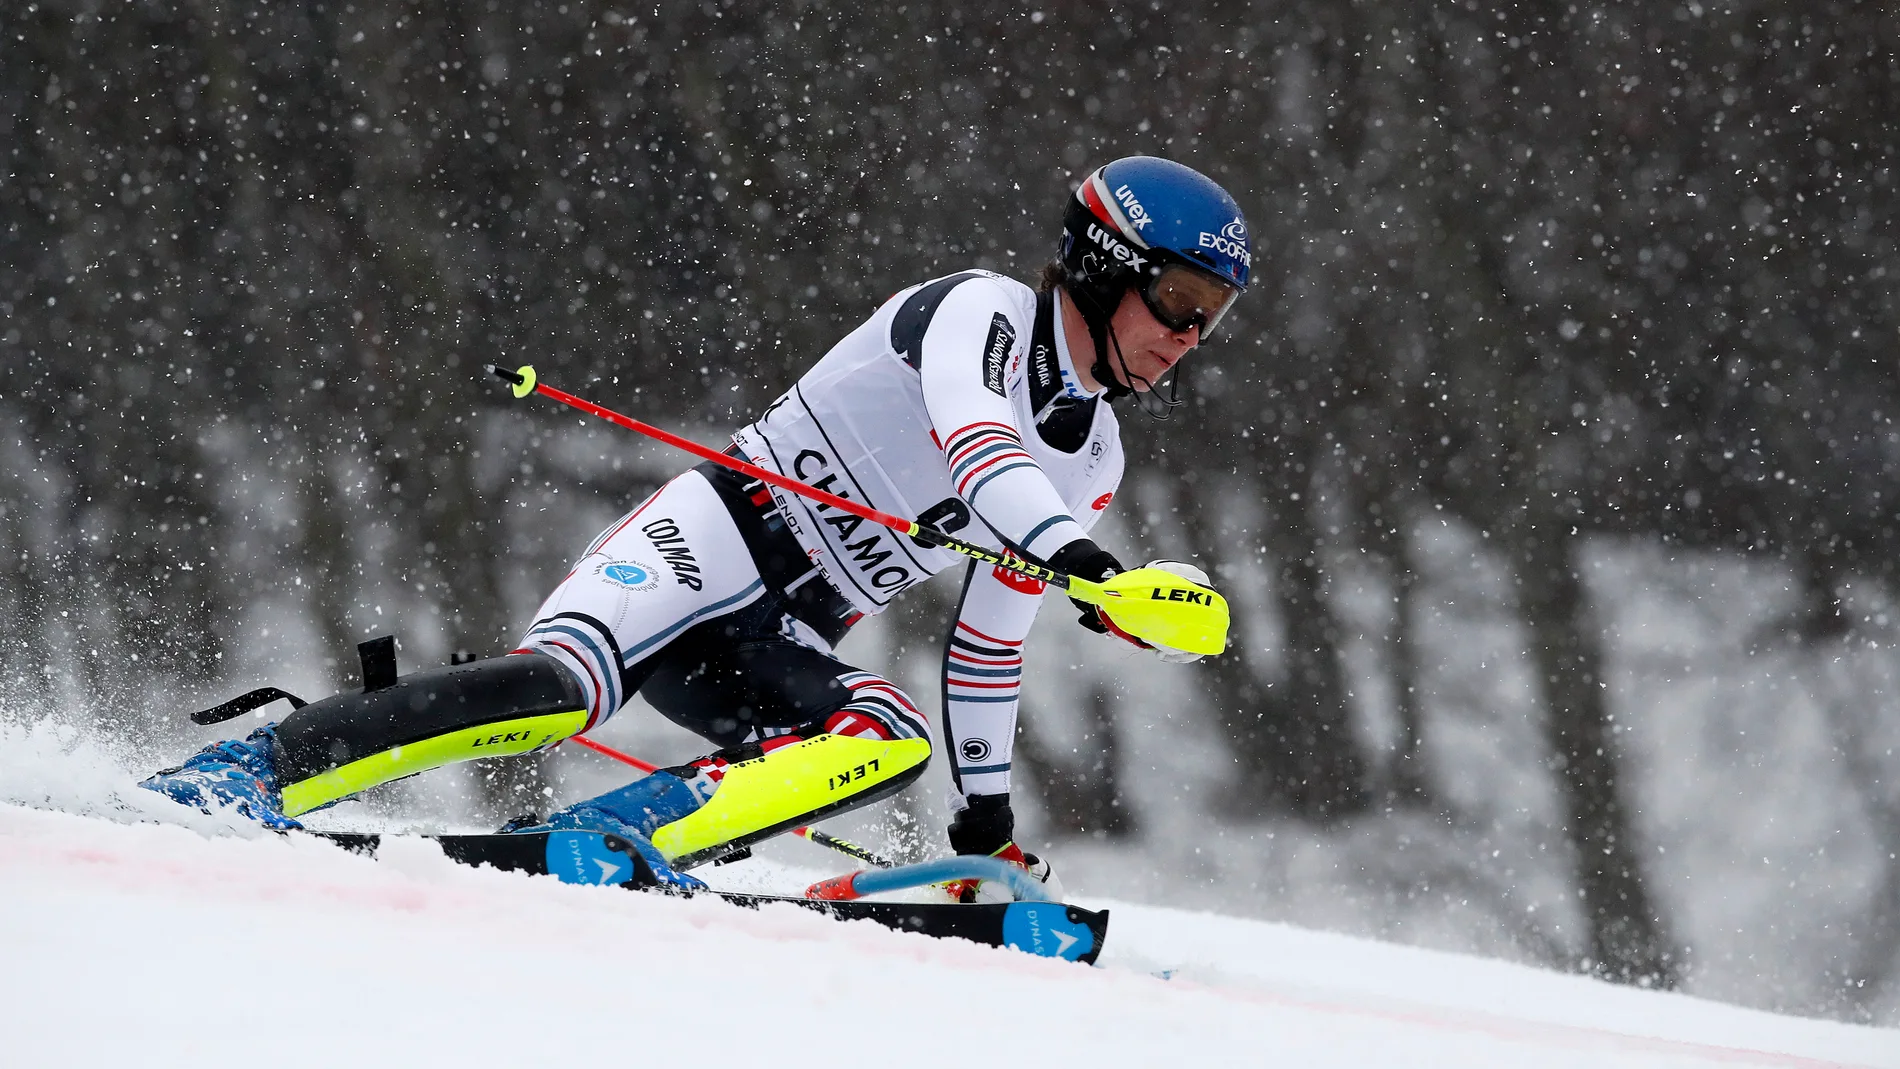 Clement Noel en acción durante la carrera de Slalom masculino de la Copa del Mundo de Esquí Alpino FIS en Les Houches - Chamonix, Francia, 30 de enero de 2021. (Francia) EFE/EPA/SEBASTIEN NOGIER